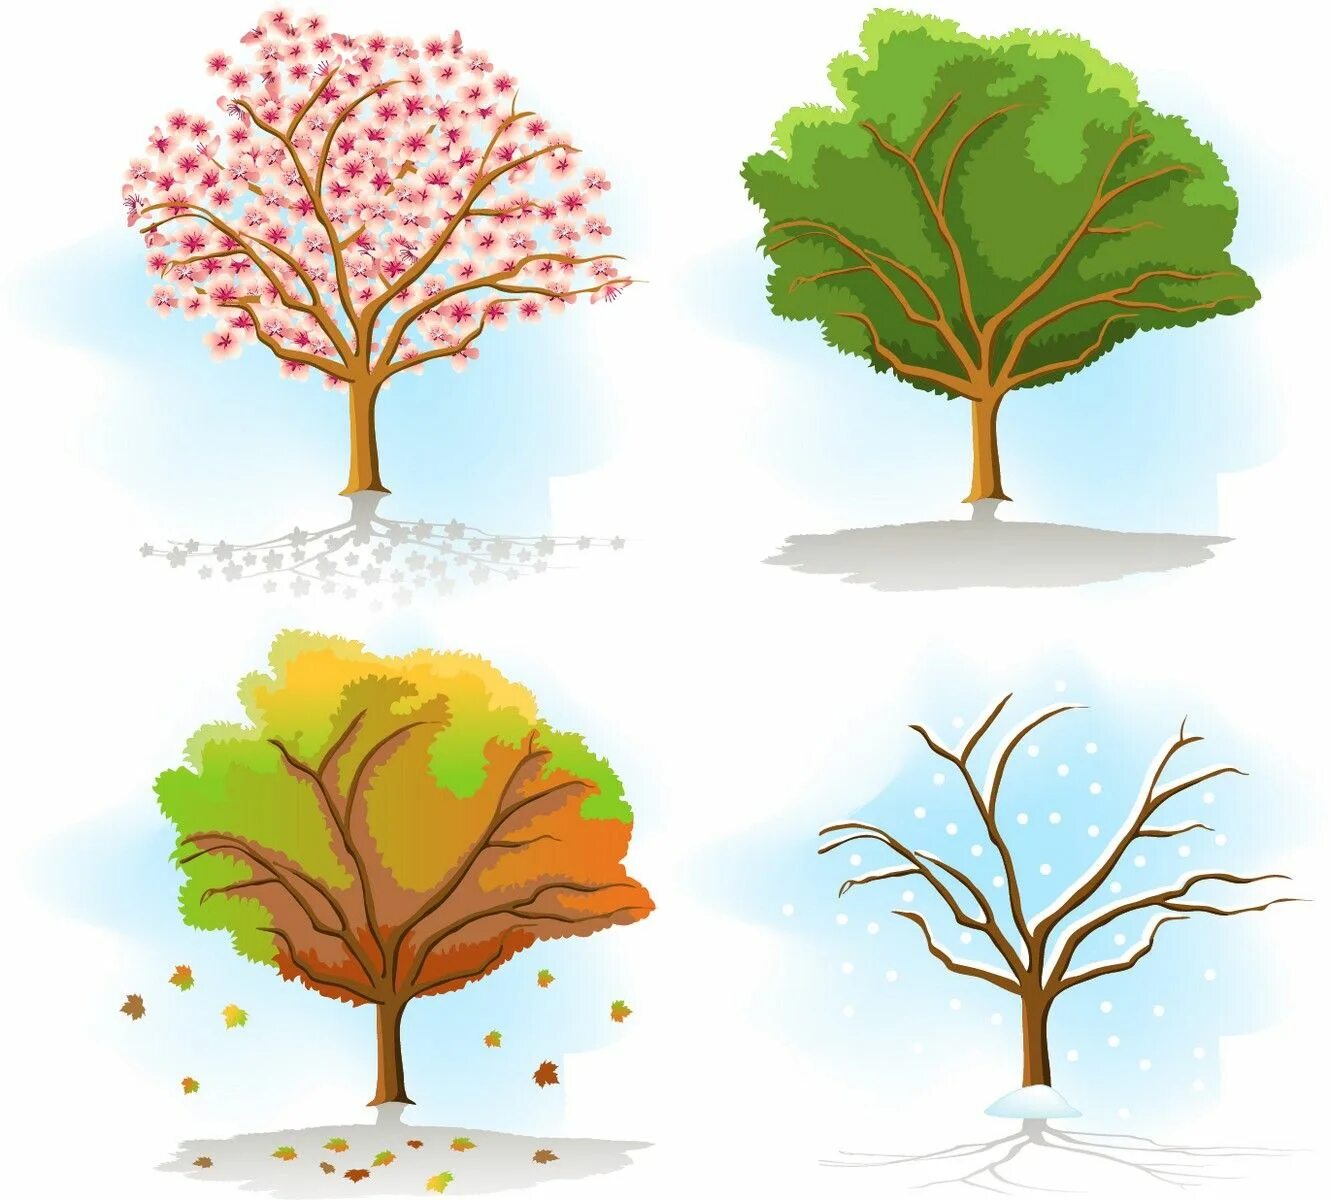 Яблоня в разные времена года. Сезонное дерево. Дерево в разные времена года. Изображения времен года для детей. Дерево четыре времени года.